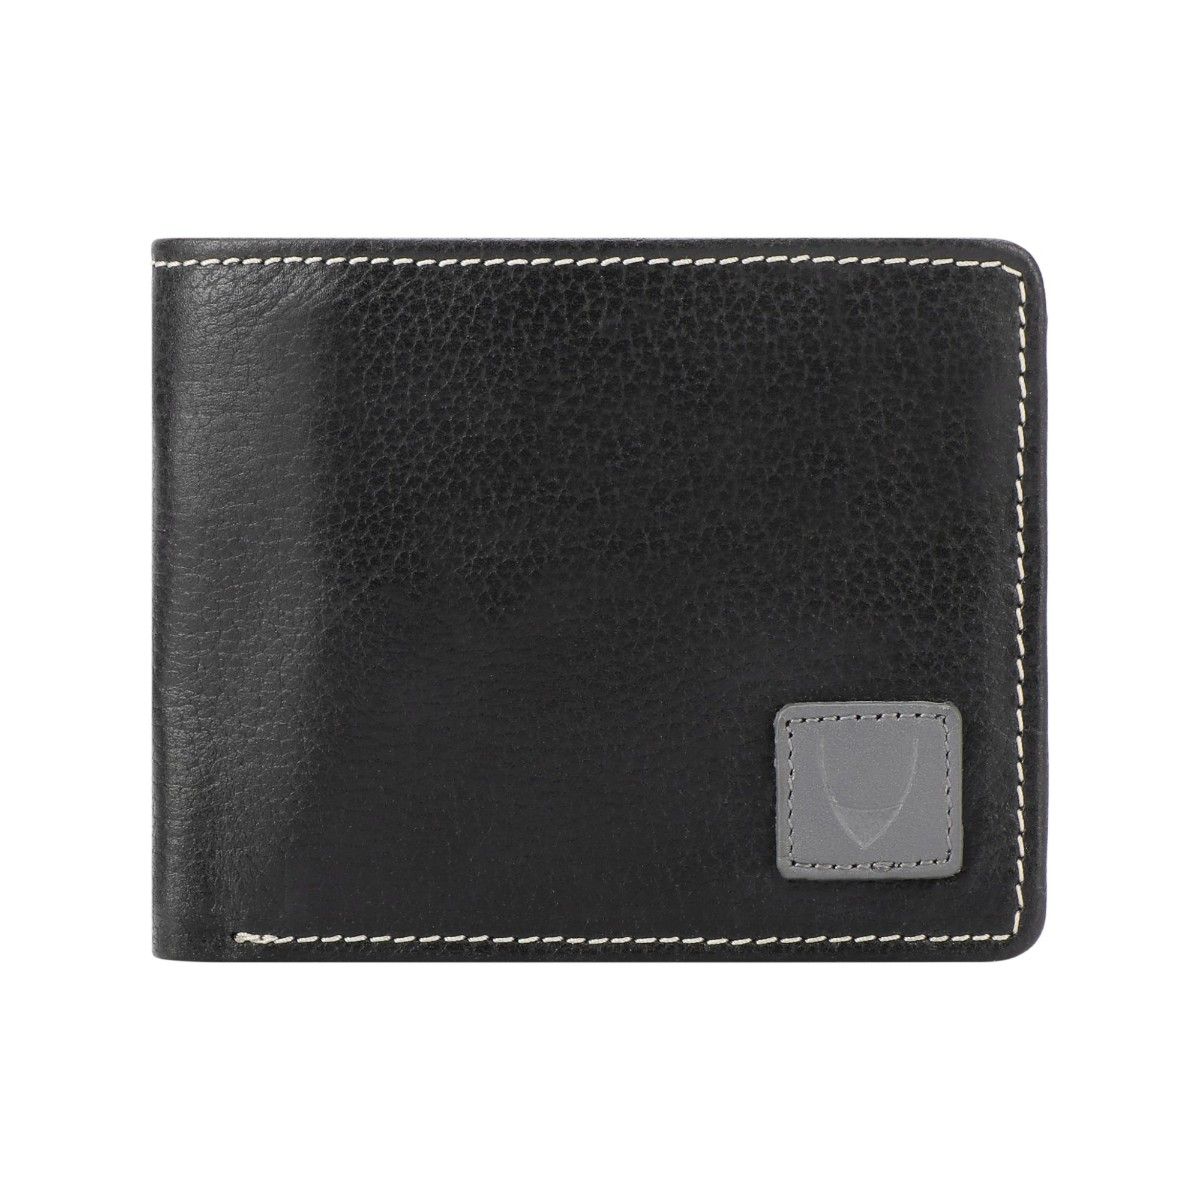 Hidesign Black Prn Mel Ran Wallet (Ee 036-01 Rf): Buy Hidesign Black ...